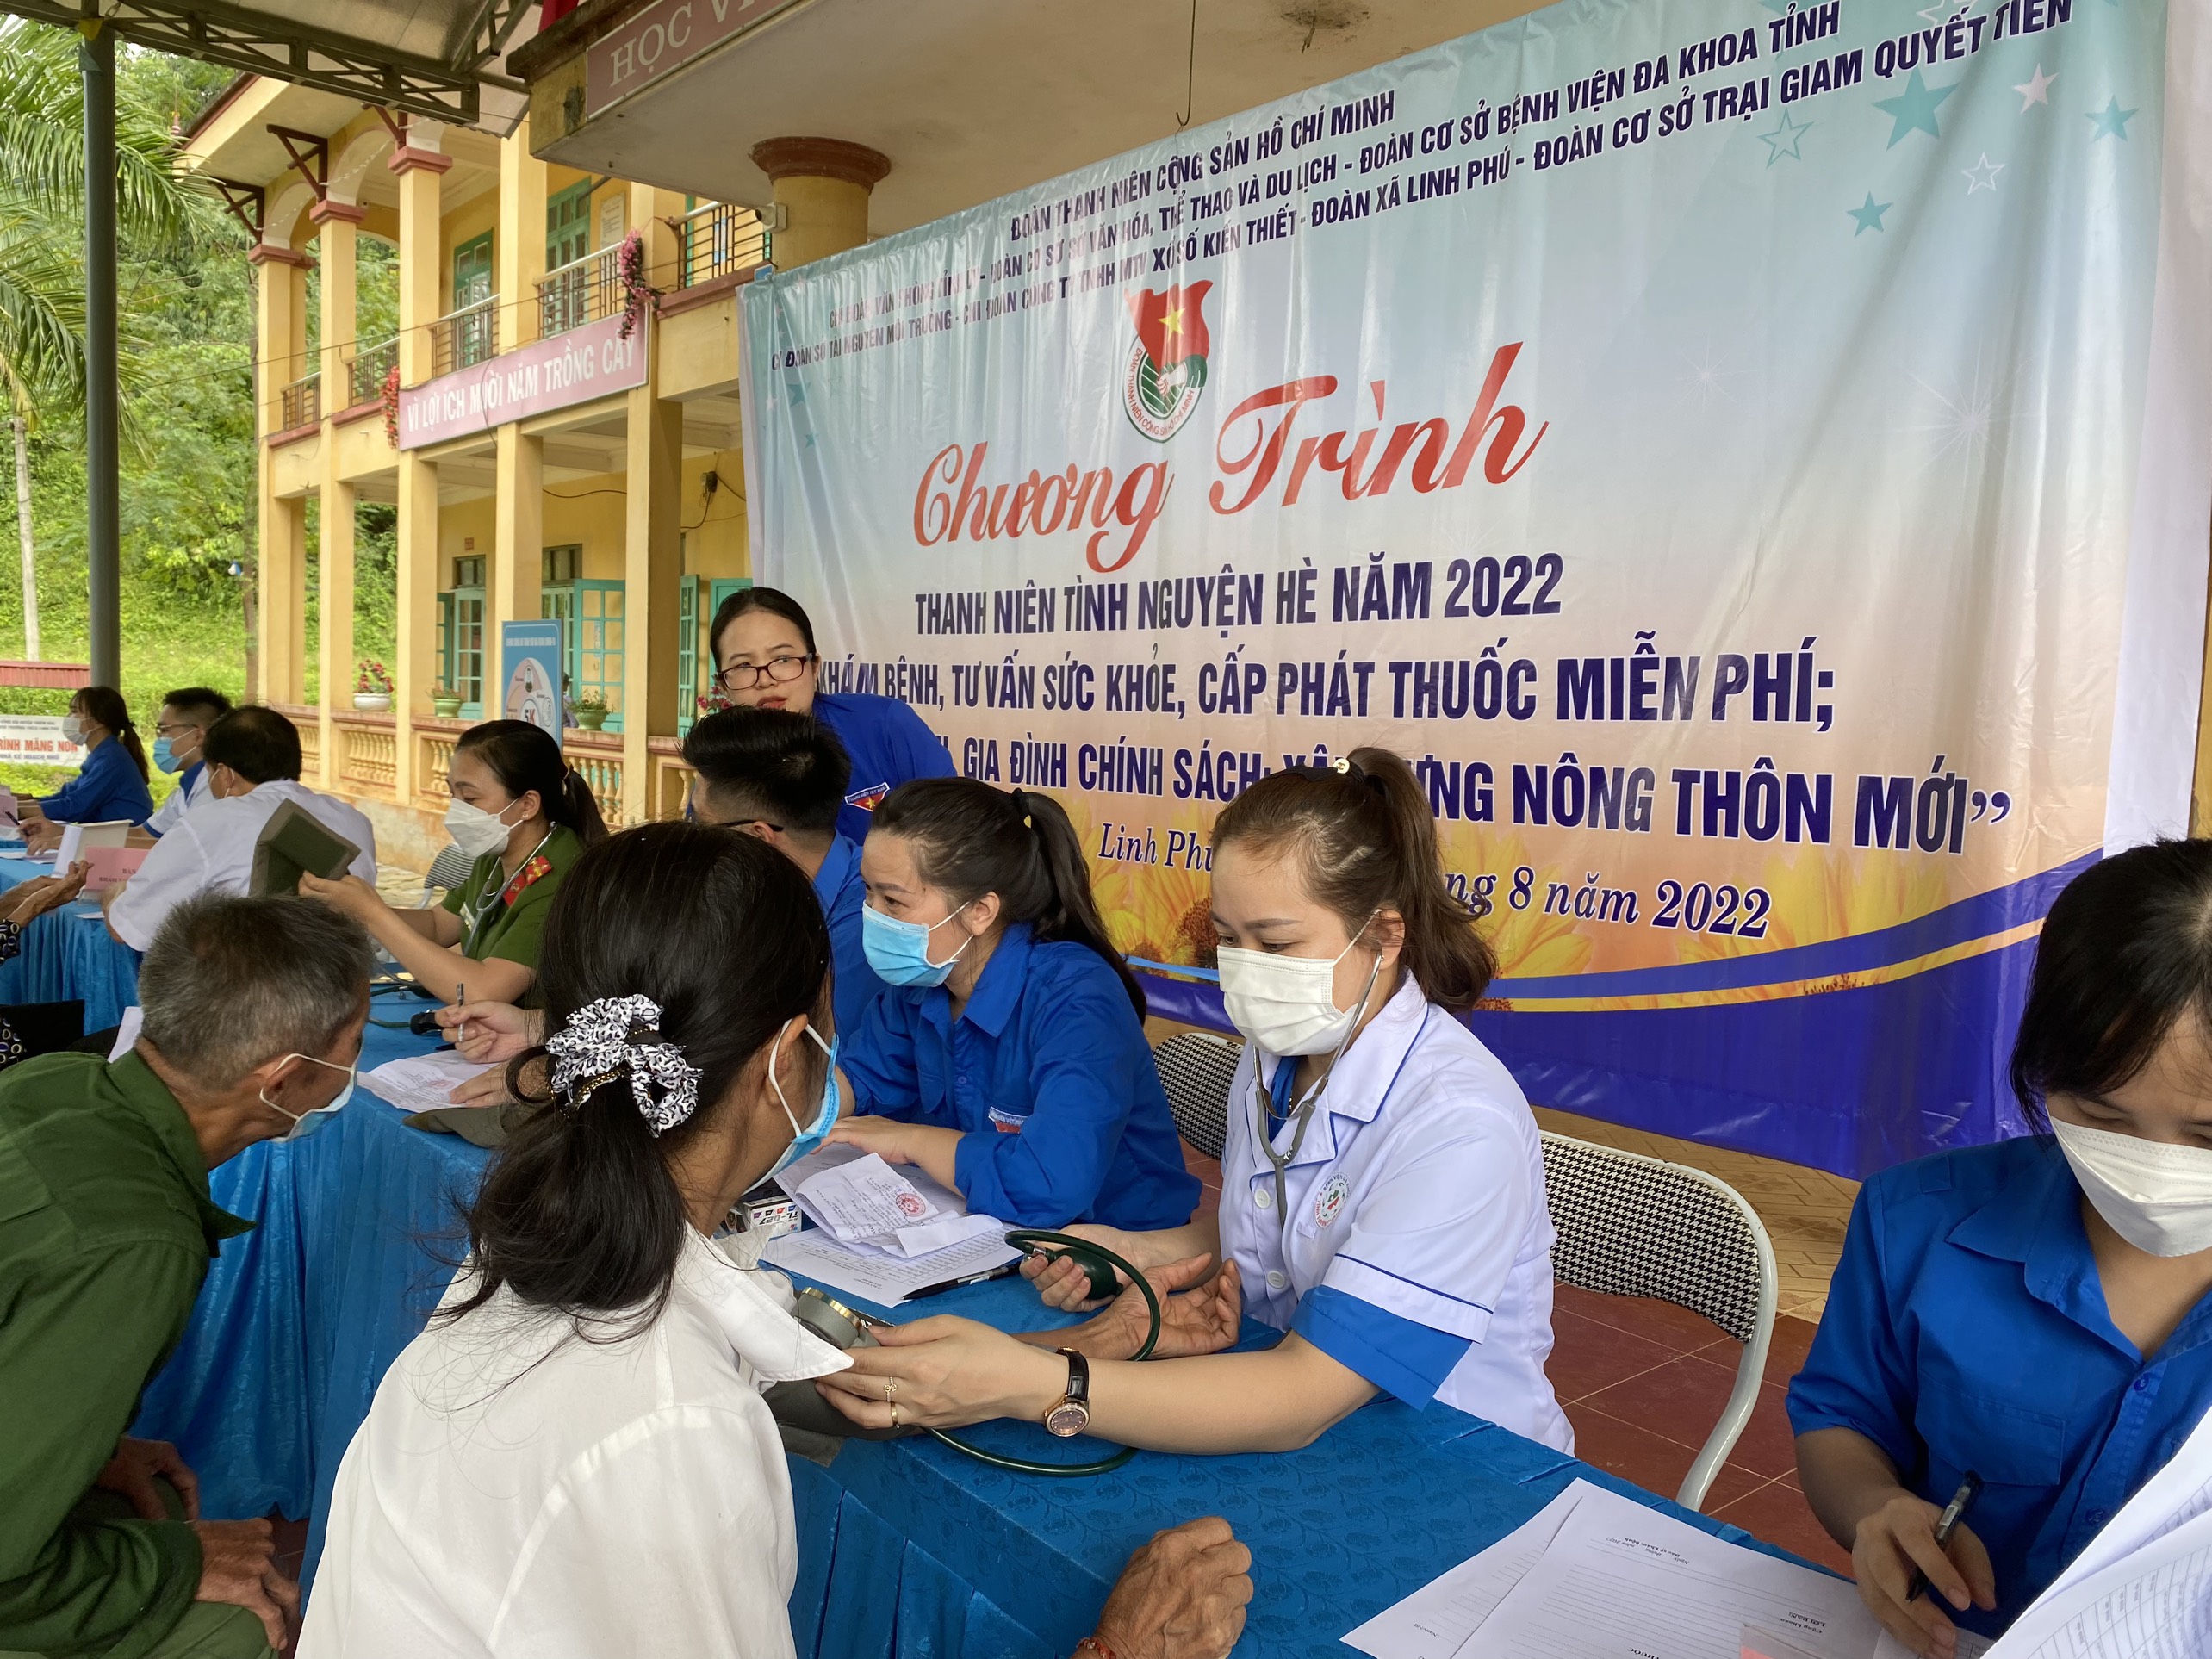 Khám, chữa bệnh và cấp phát thuốc miễn phí cho gần 200 lượt người dân trên bàn xã Linh Phú, huyện Chiêm Hóa.